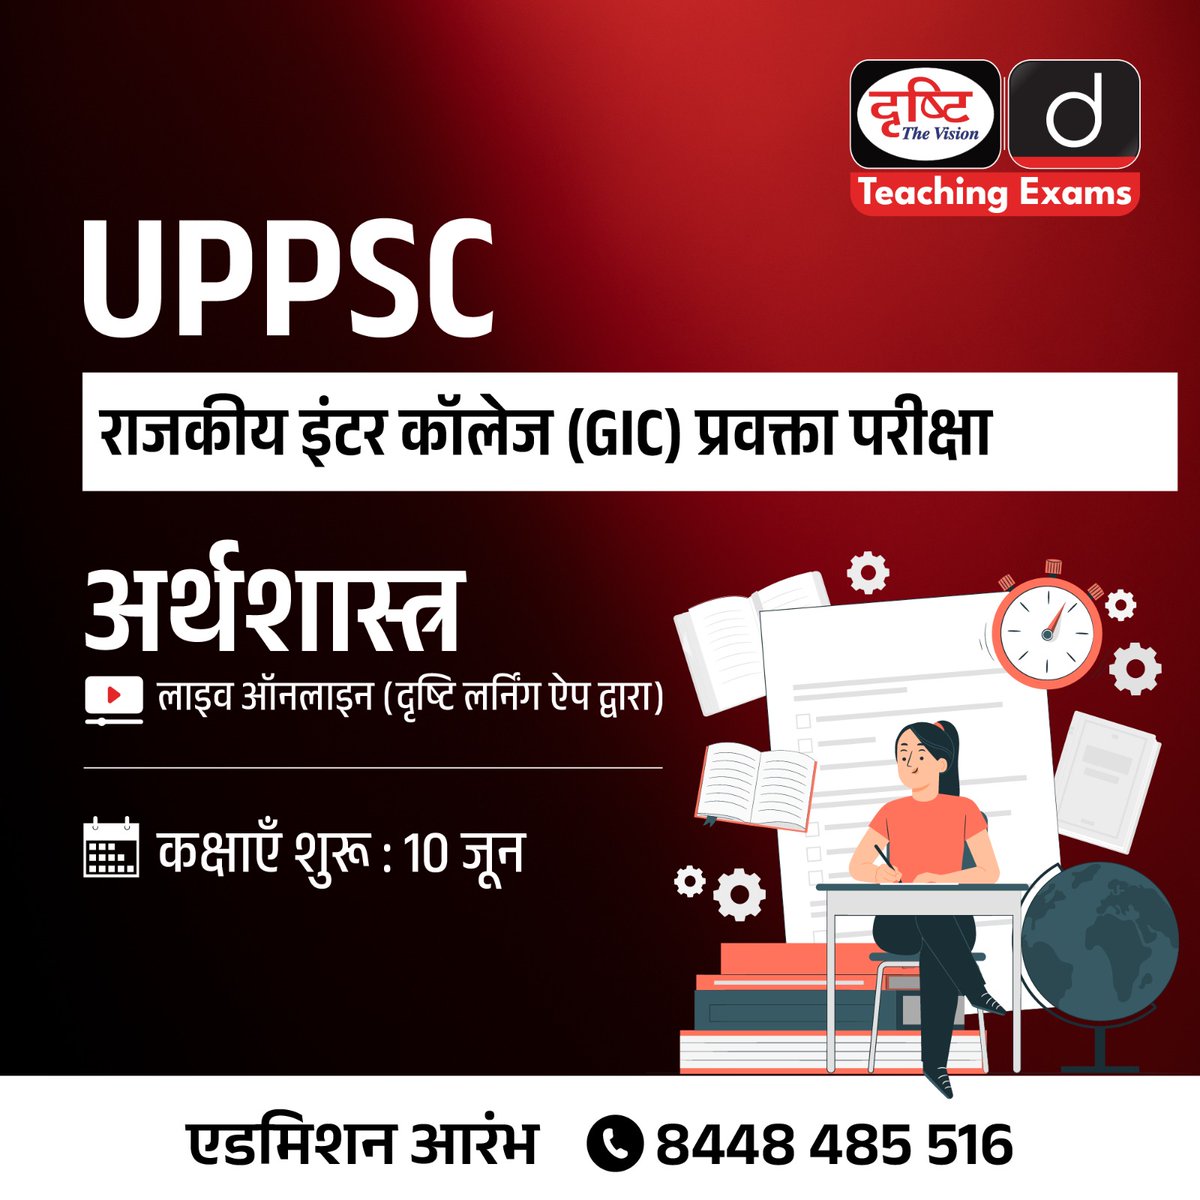 UPPSC राजकीय इंटर कॉलेज (GIC) प्रवक्ता परीक्षा
.
विषय : अर्थशास्त्र
.
लाइव ऑनलाइन (दृष्टि लर्निंग ऐप द्वारा)
.
एडमिशन आरंभ
.
कोर्स से संबंधित अधिक जानकारी व एडमिशन के लिये आप इस लिंक पर क्लिक करें: drishti.xyz/Hindi-Online-C…
.
संपर्क करें: 8448485516
.
#UPPSC #GIC